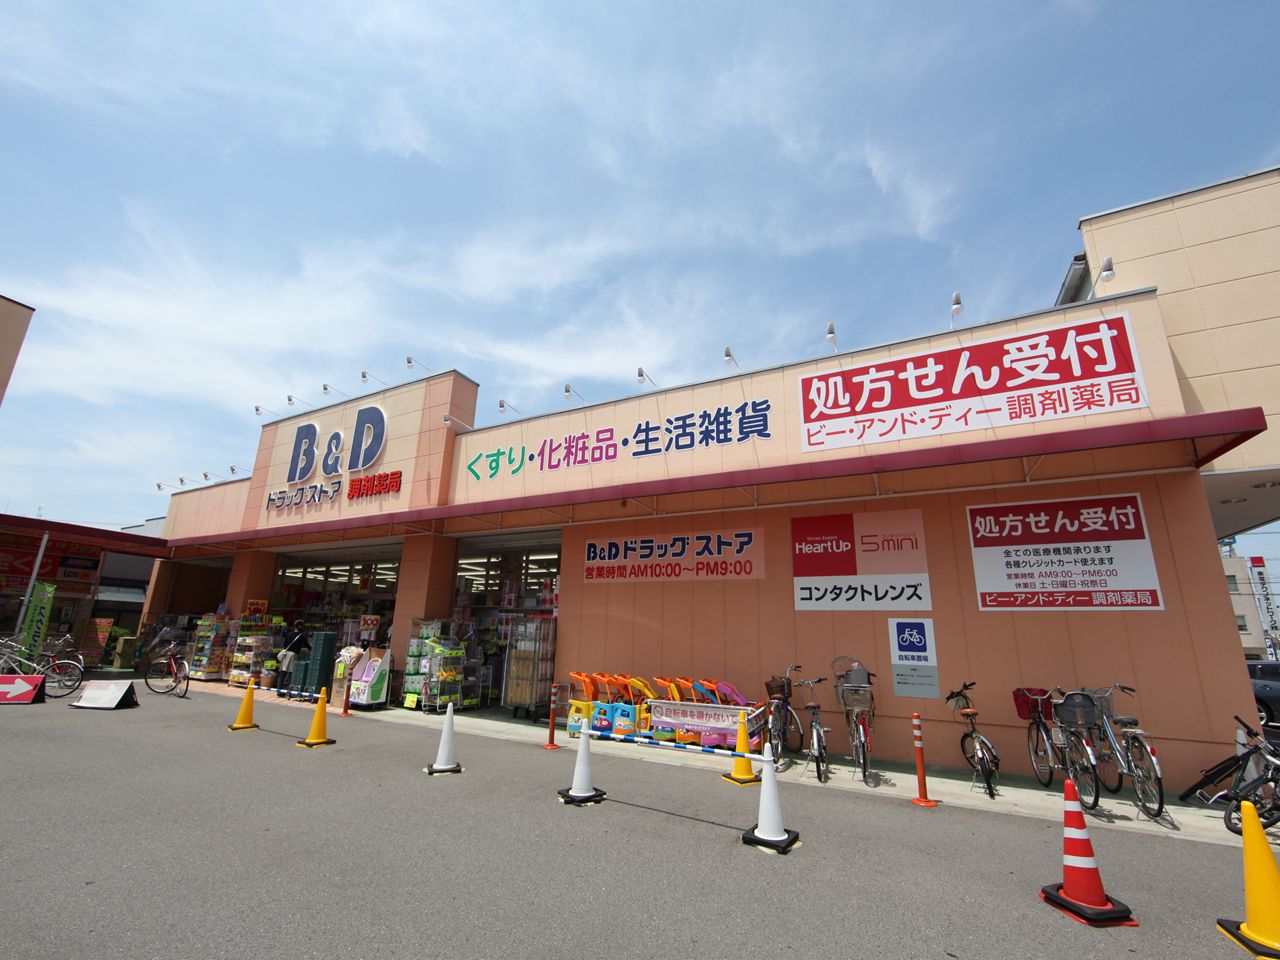 Dorakkusutoa. Bea ・ and ・ Dee drugstore Shiga park shop 1000m until (drugstore)